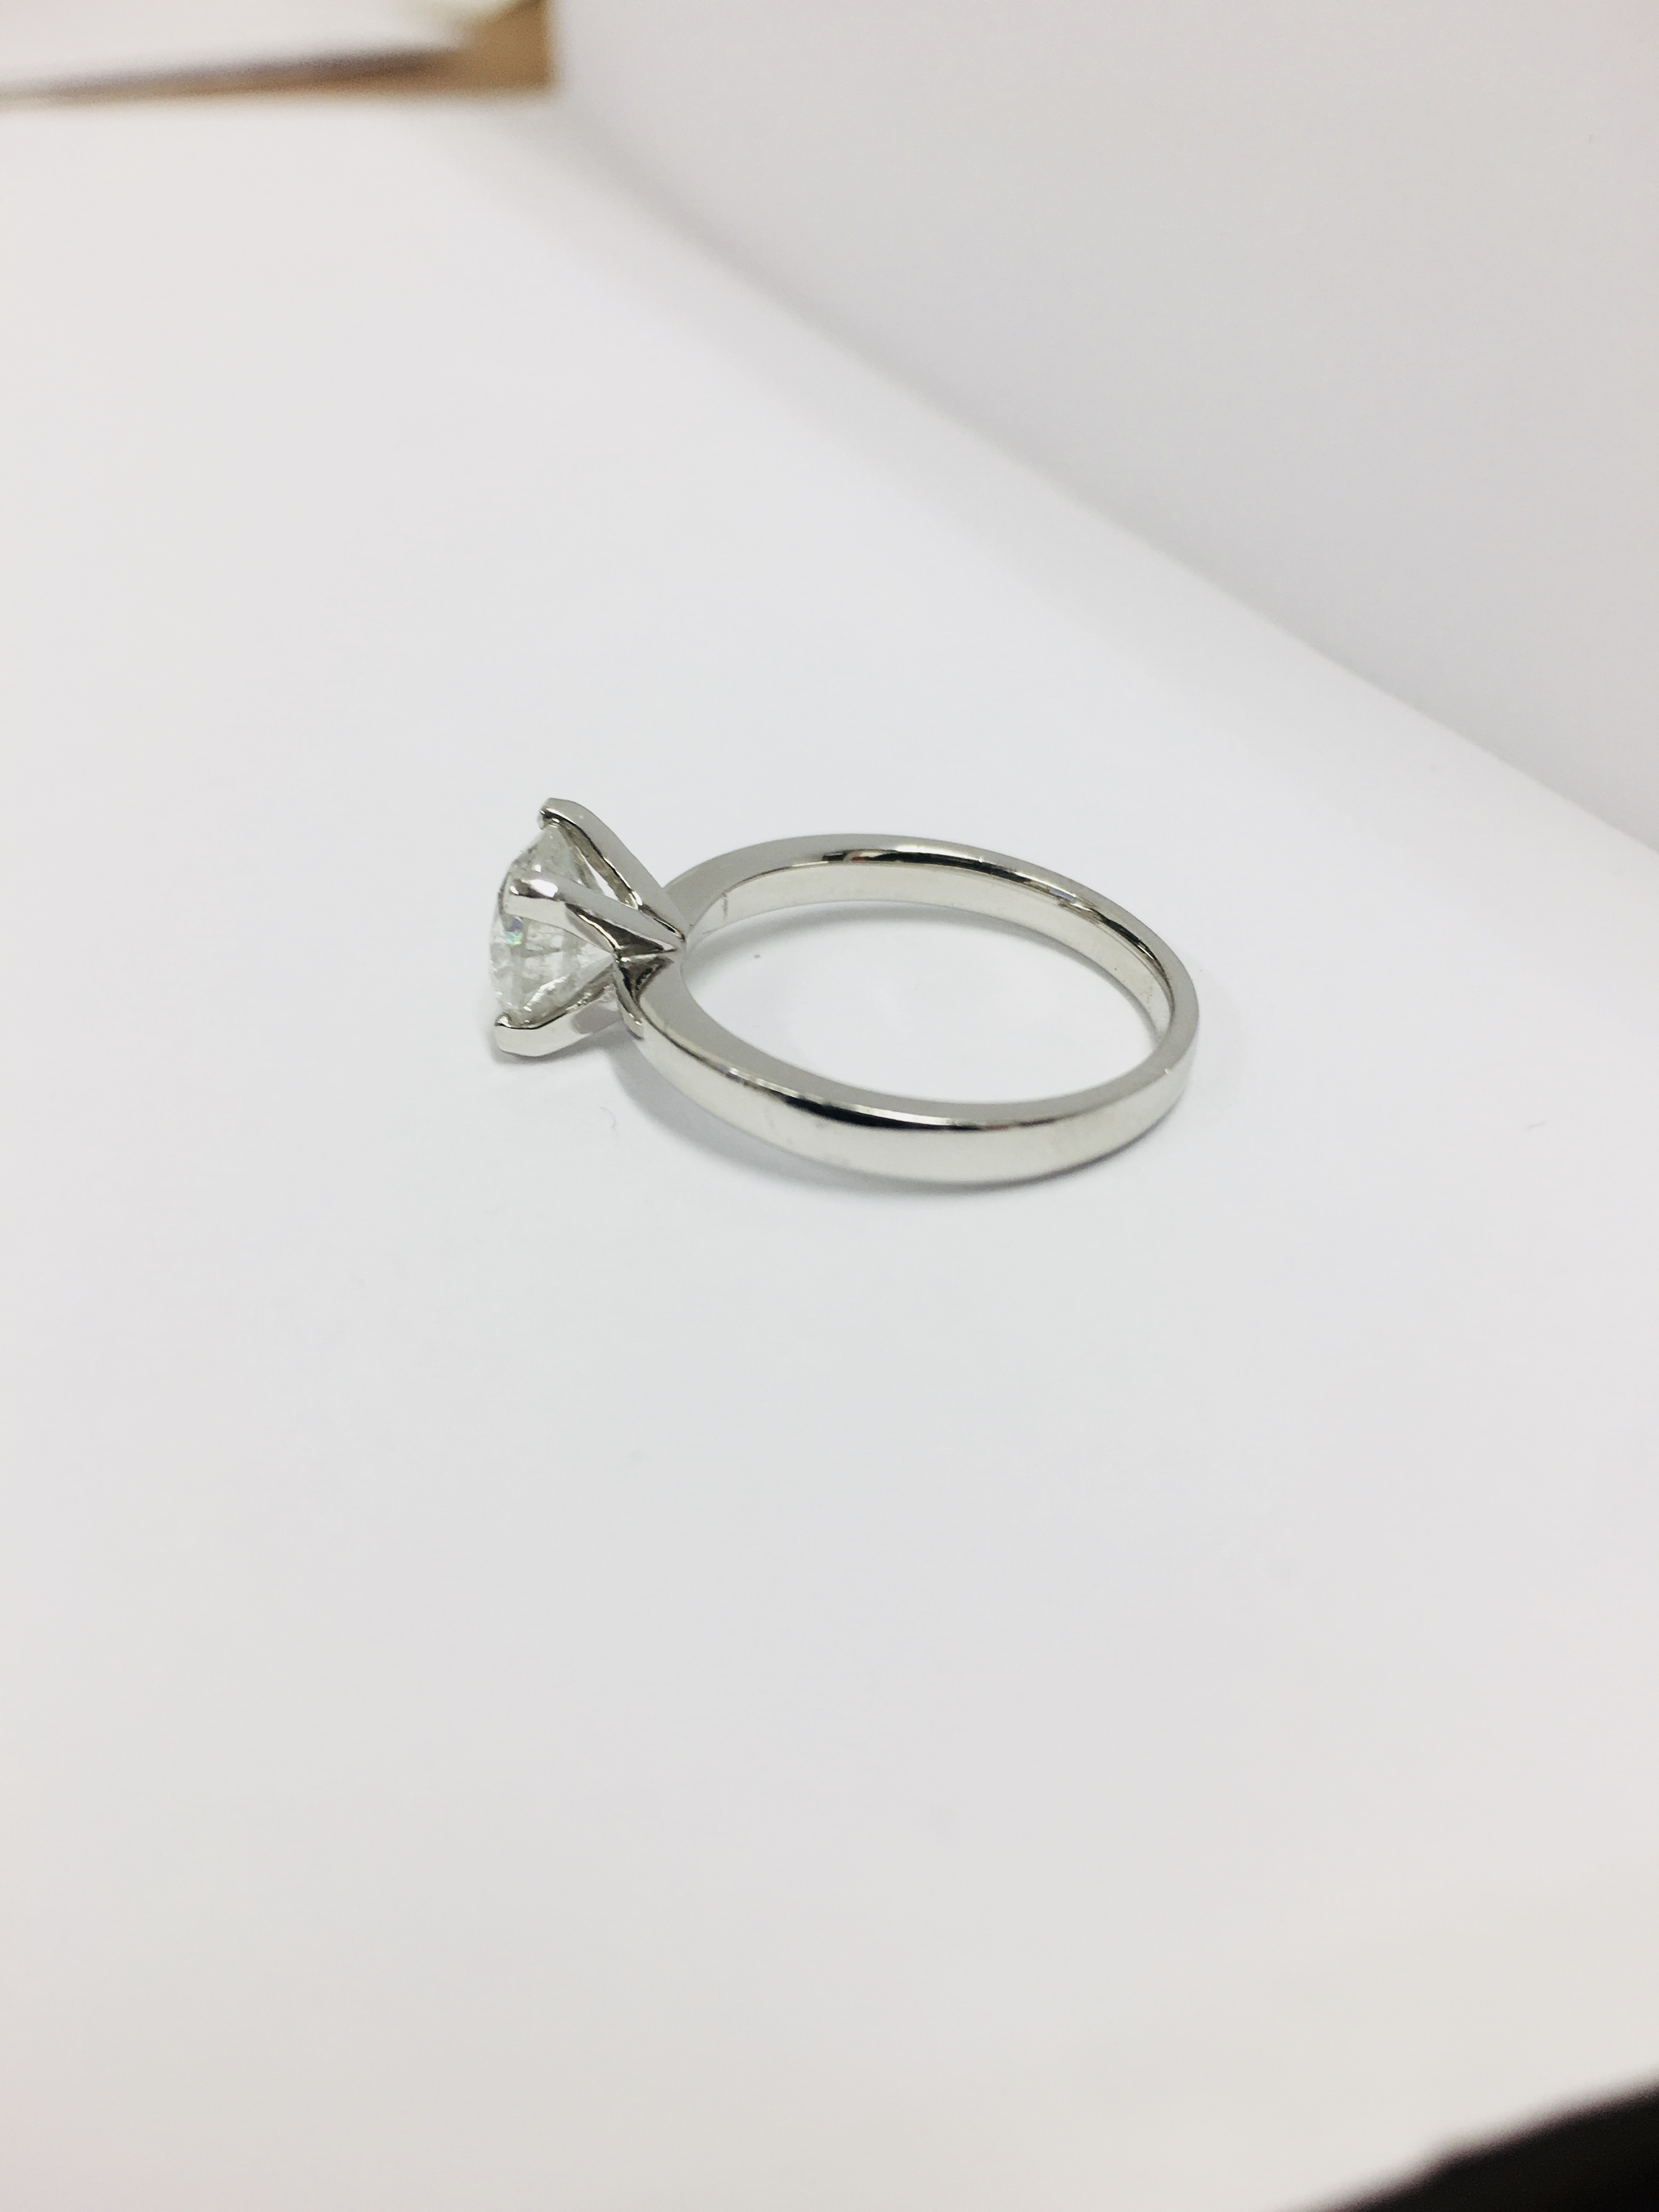 2.08ct diamond solitaire ring set in platinum - Image 26 of 48